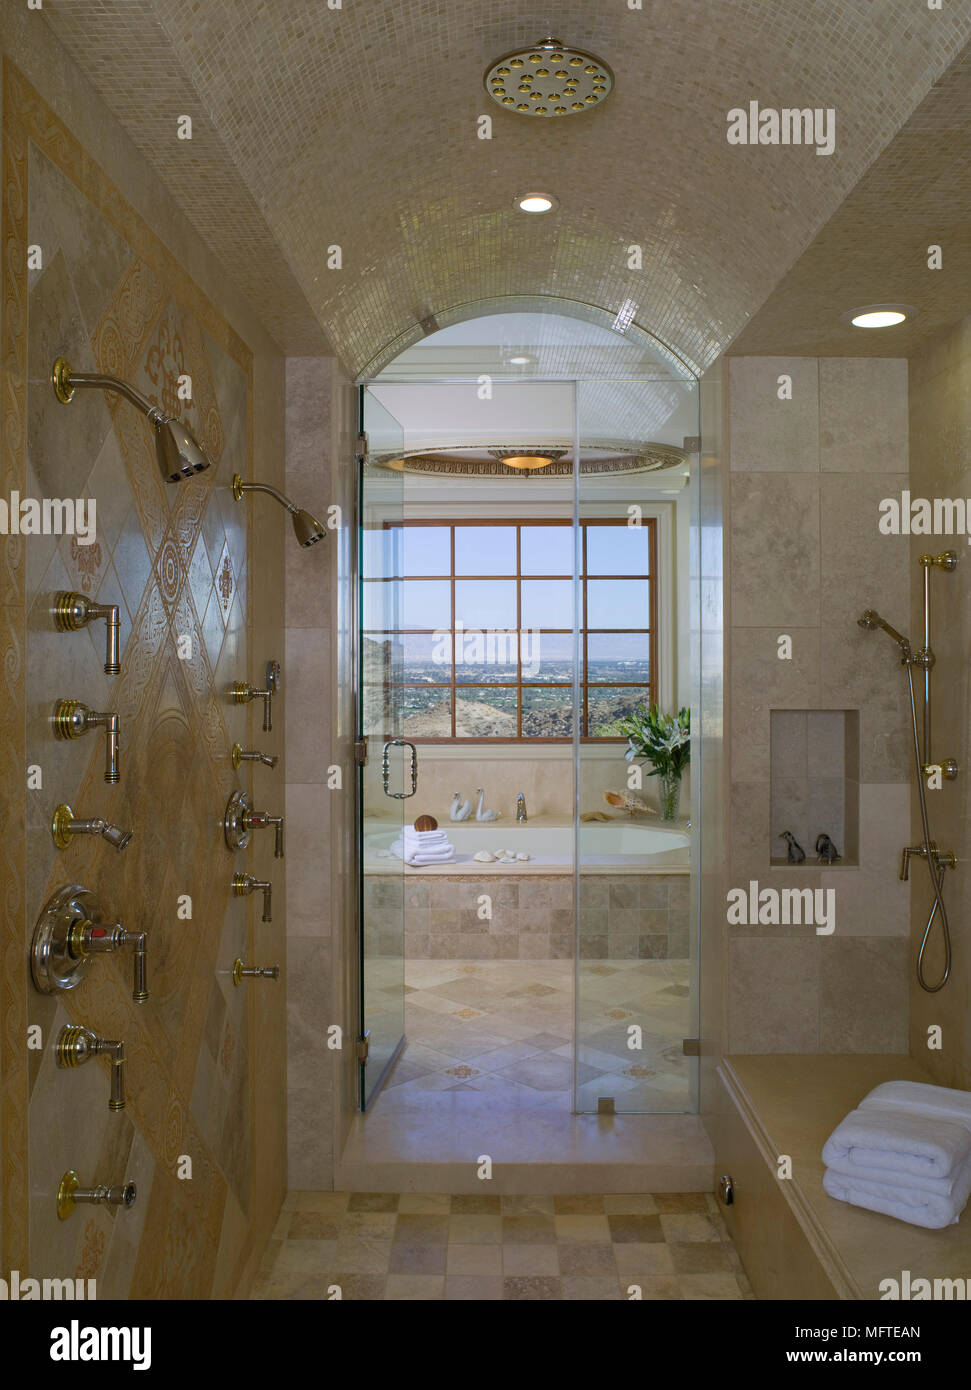 Salle d'eau avec douche double portes en verre Banque D'Images